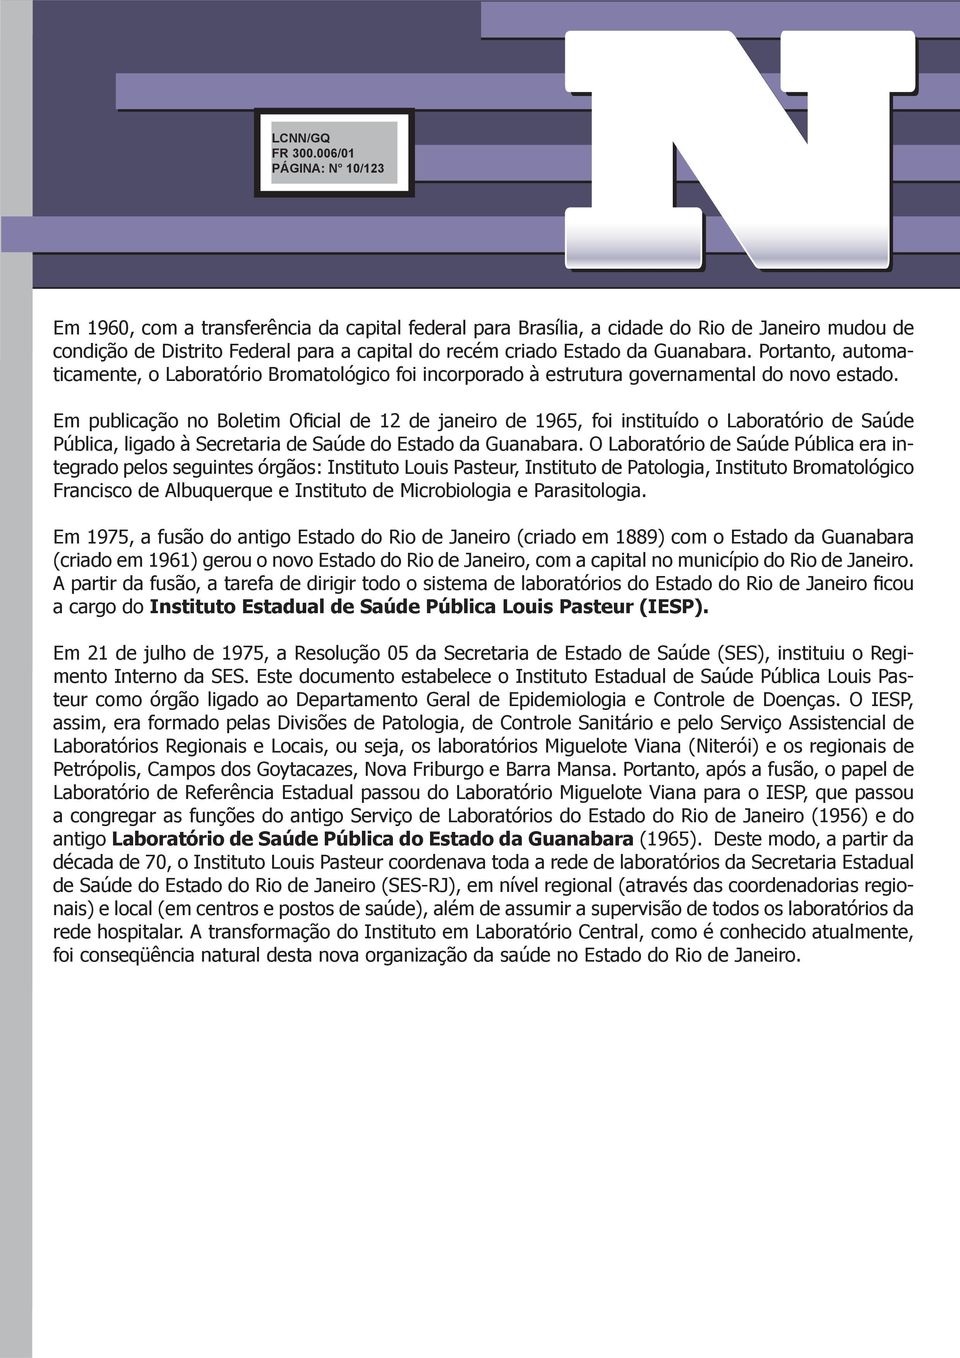 Em publicação no Boletim Oficial de 12 de janeiro de 1965, foi instituído o Laboratório de Saúde Pública, ligado à Secretaria de Saúde do Estado da Guanabara.